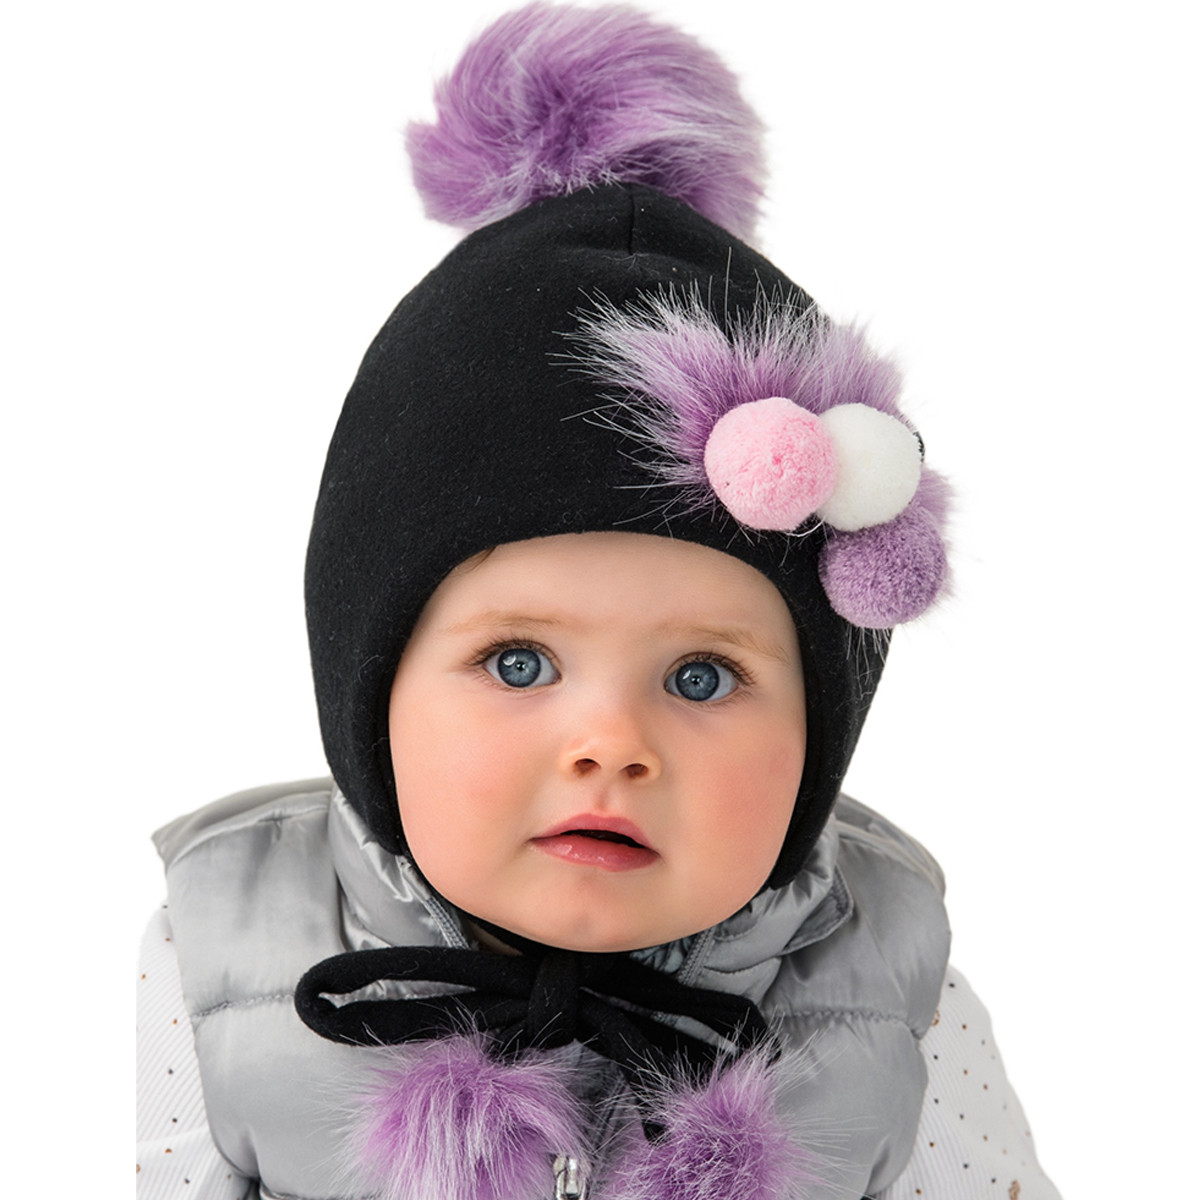 Детска зимна шапка в черно за момичета